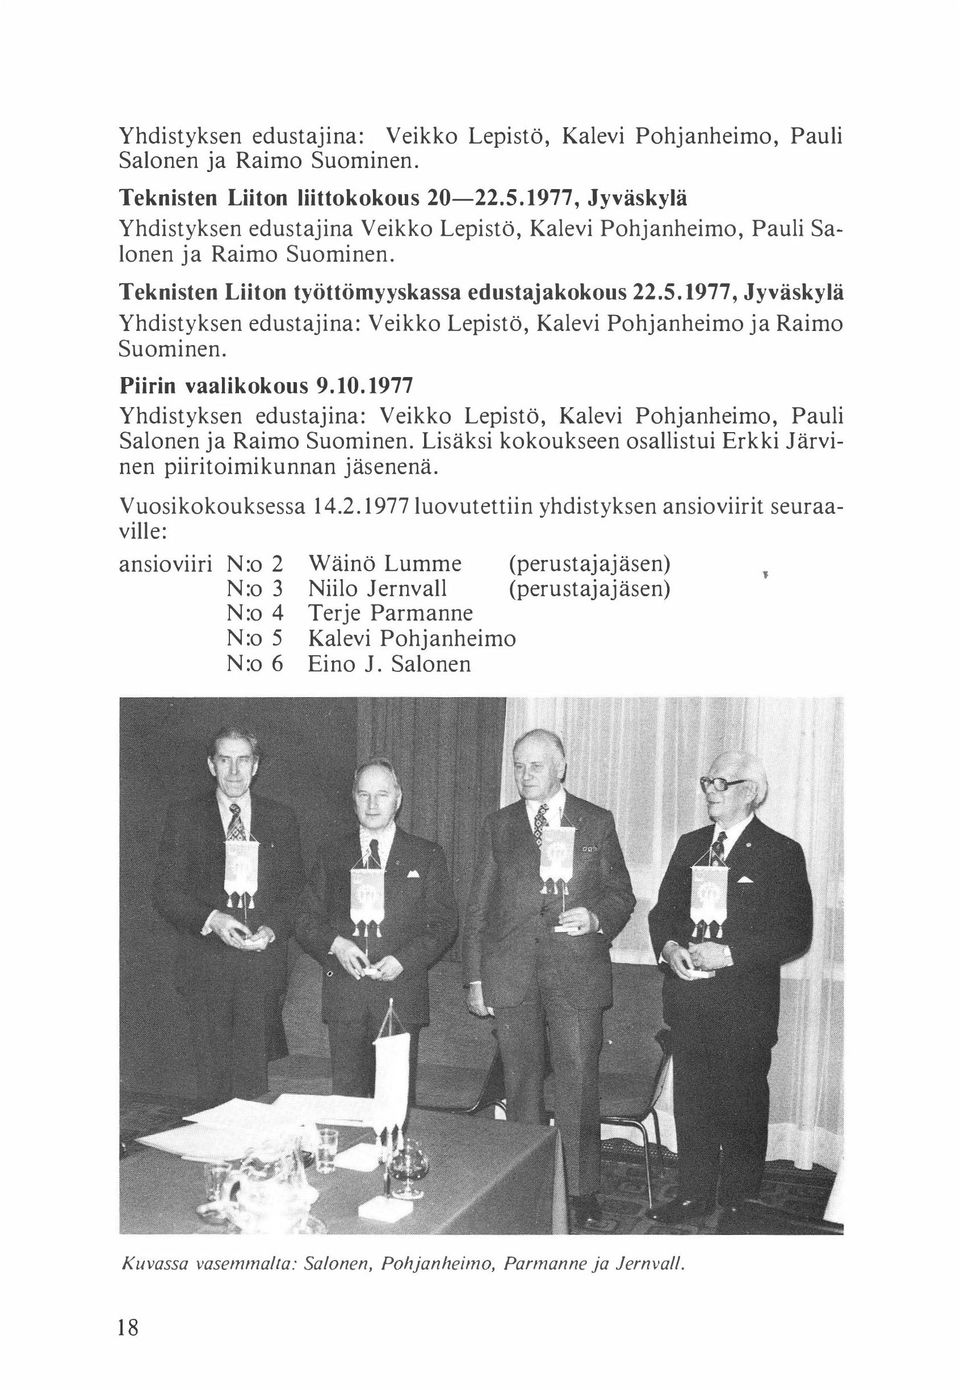 1977, Jyväskylä Yhdistyksen edustajina: Veikko Lepistö, Kalevi Pohjanheimo ja Raimo Suominen. Piirin vaalikokous 9.10.